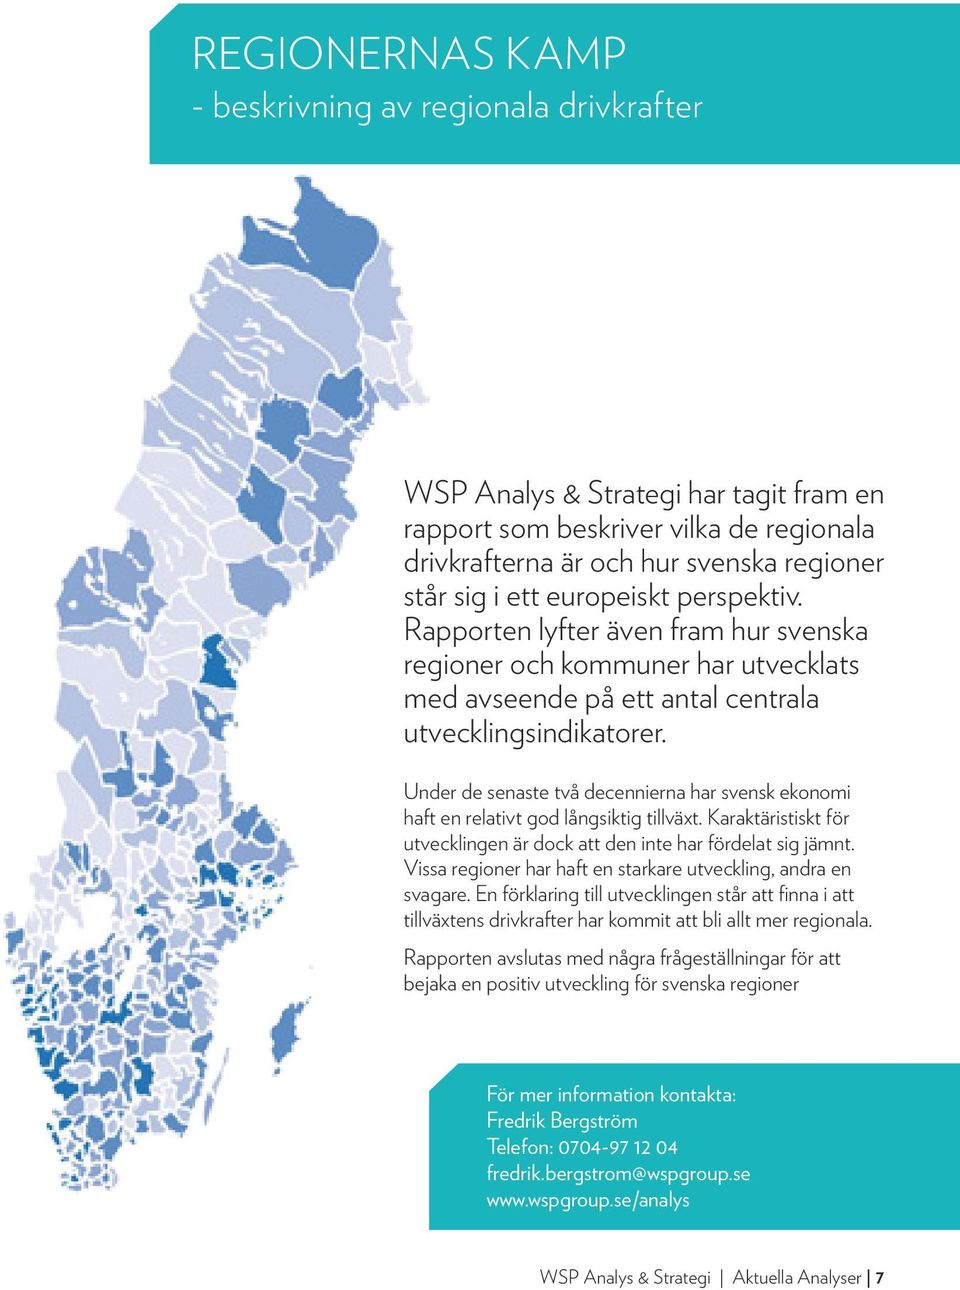 Under de senaste två decennierna har svensk ekonomi haft en relativt god långsiktig tillväxt. Karaktäristiskt för utvecklingen är dock att den inte har fördelat sig jämnt.